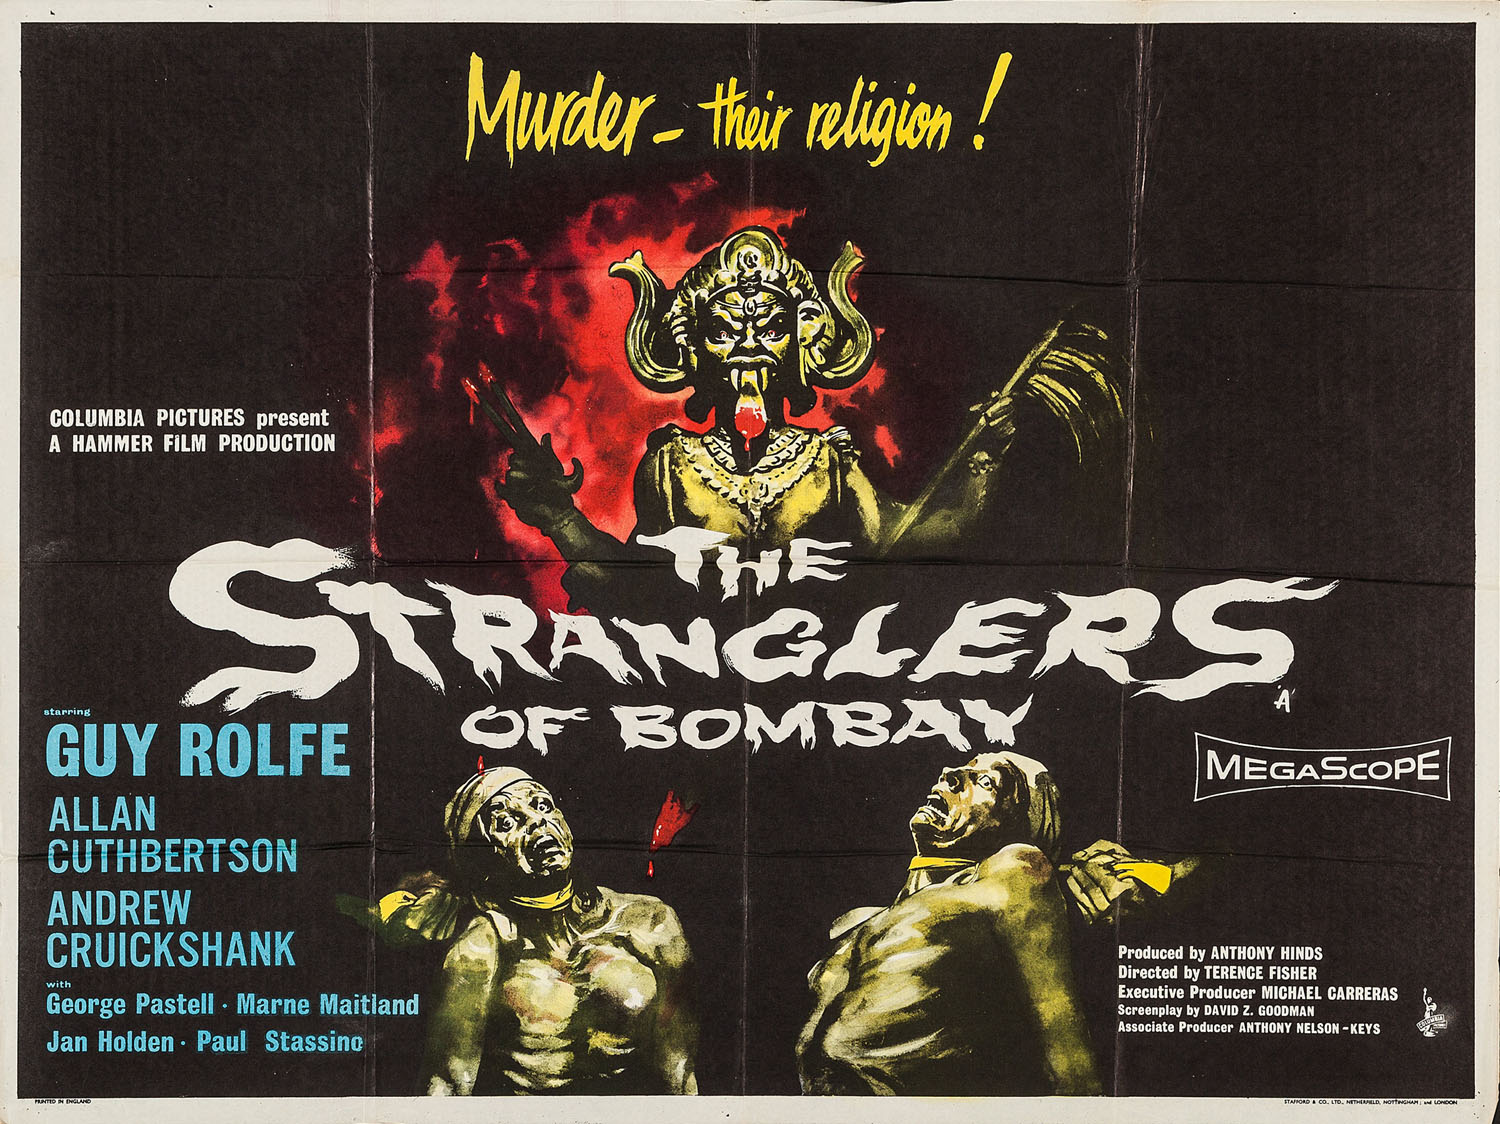 STRANGLERS OF BOMBAY, THE